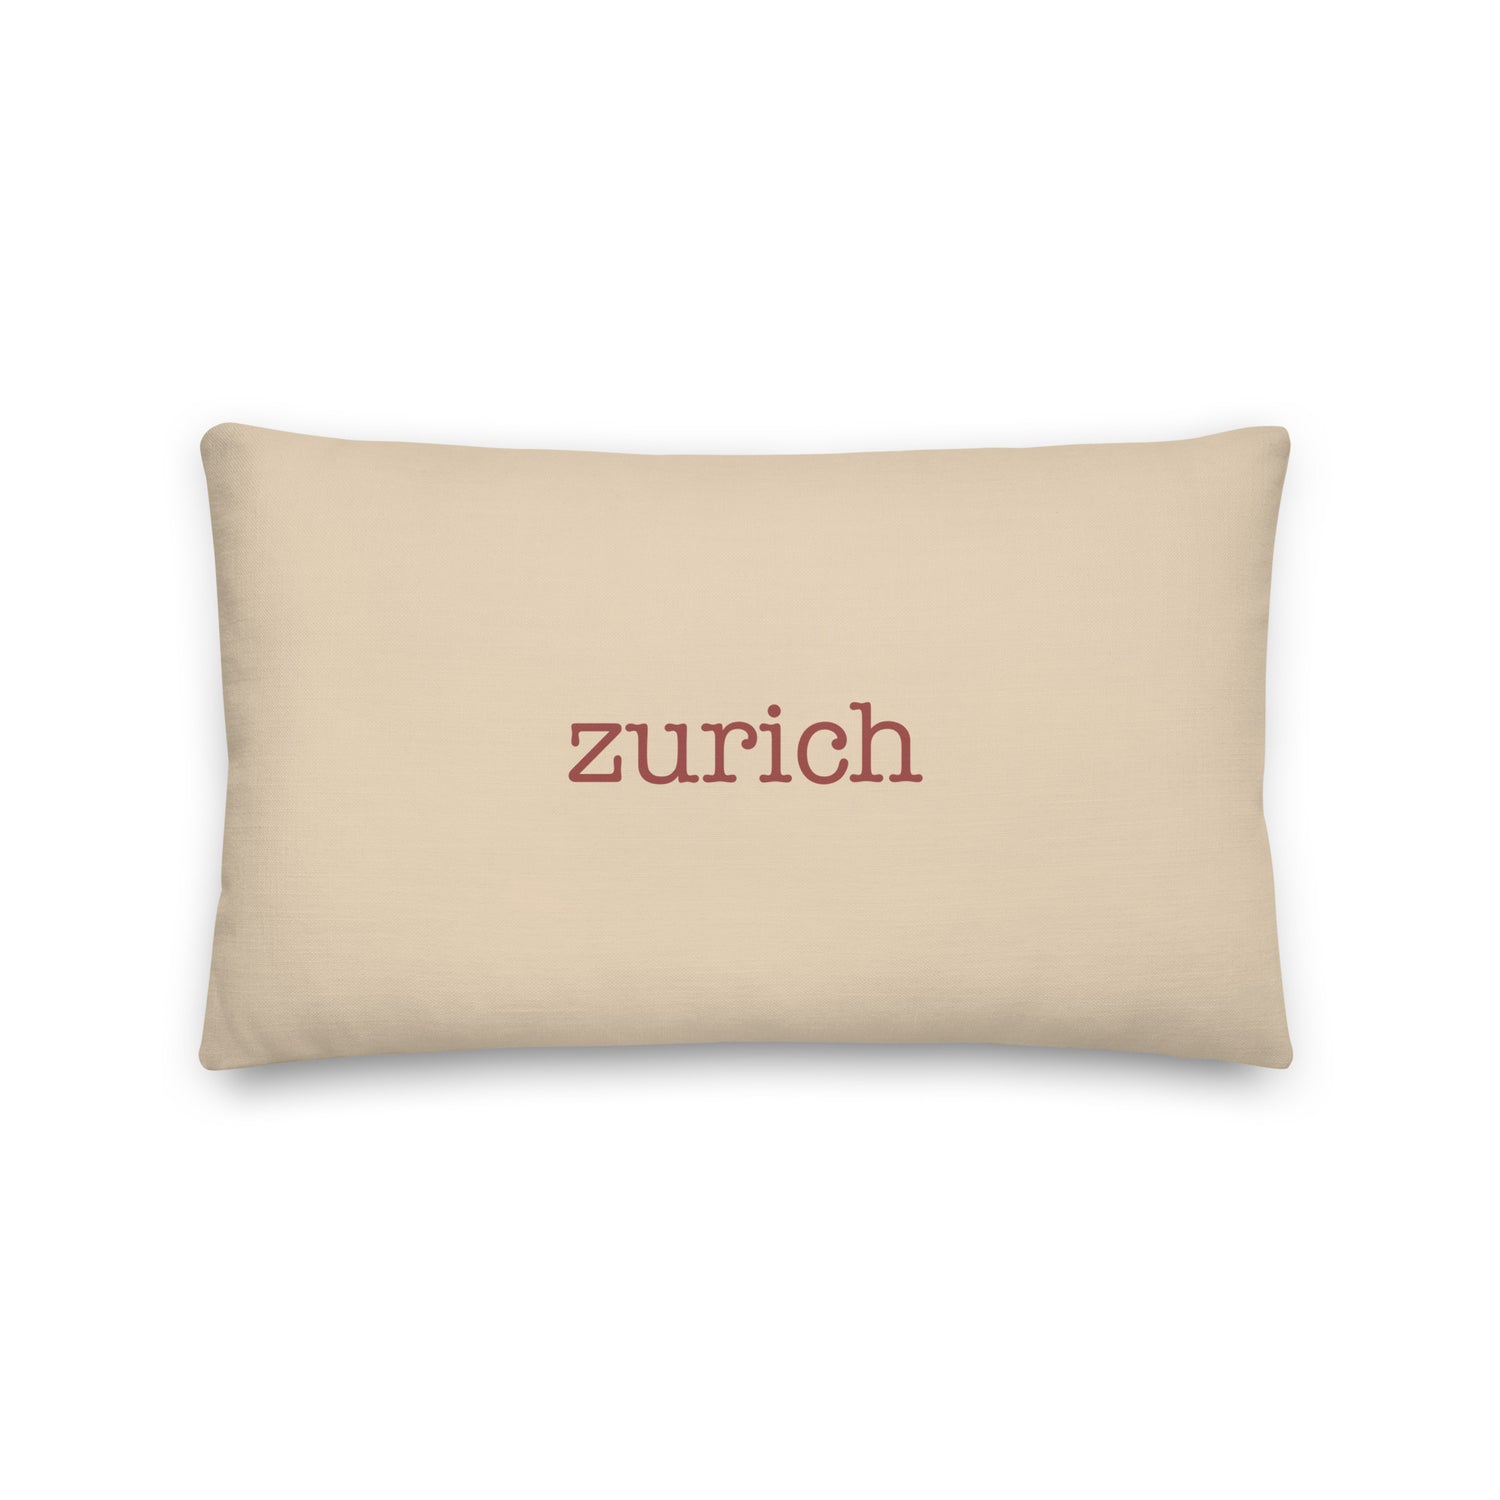 Zurich Switzerland Pillows and Blankets • ZRH Airport Code